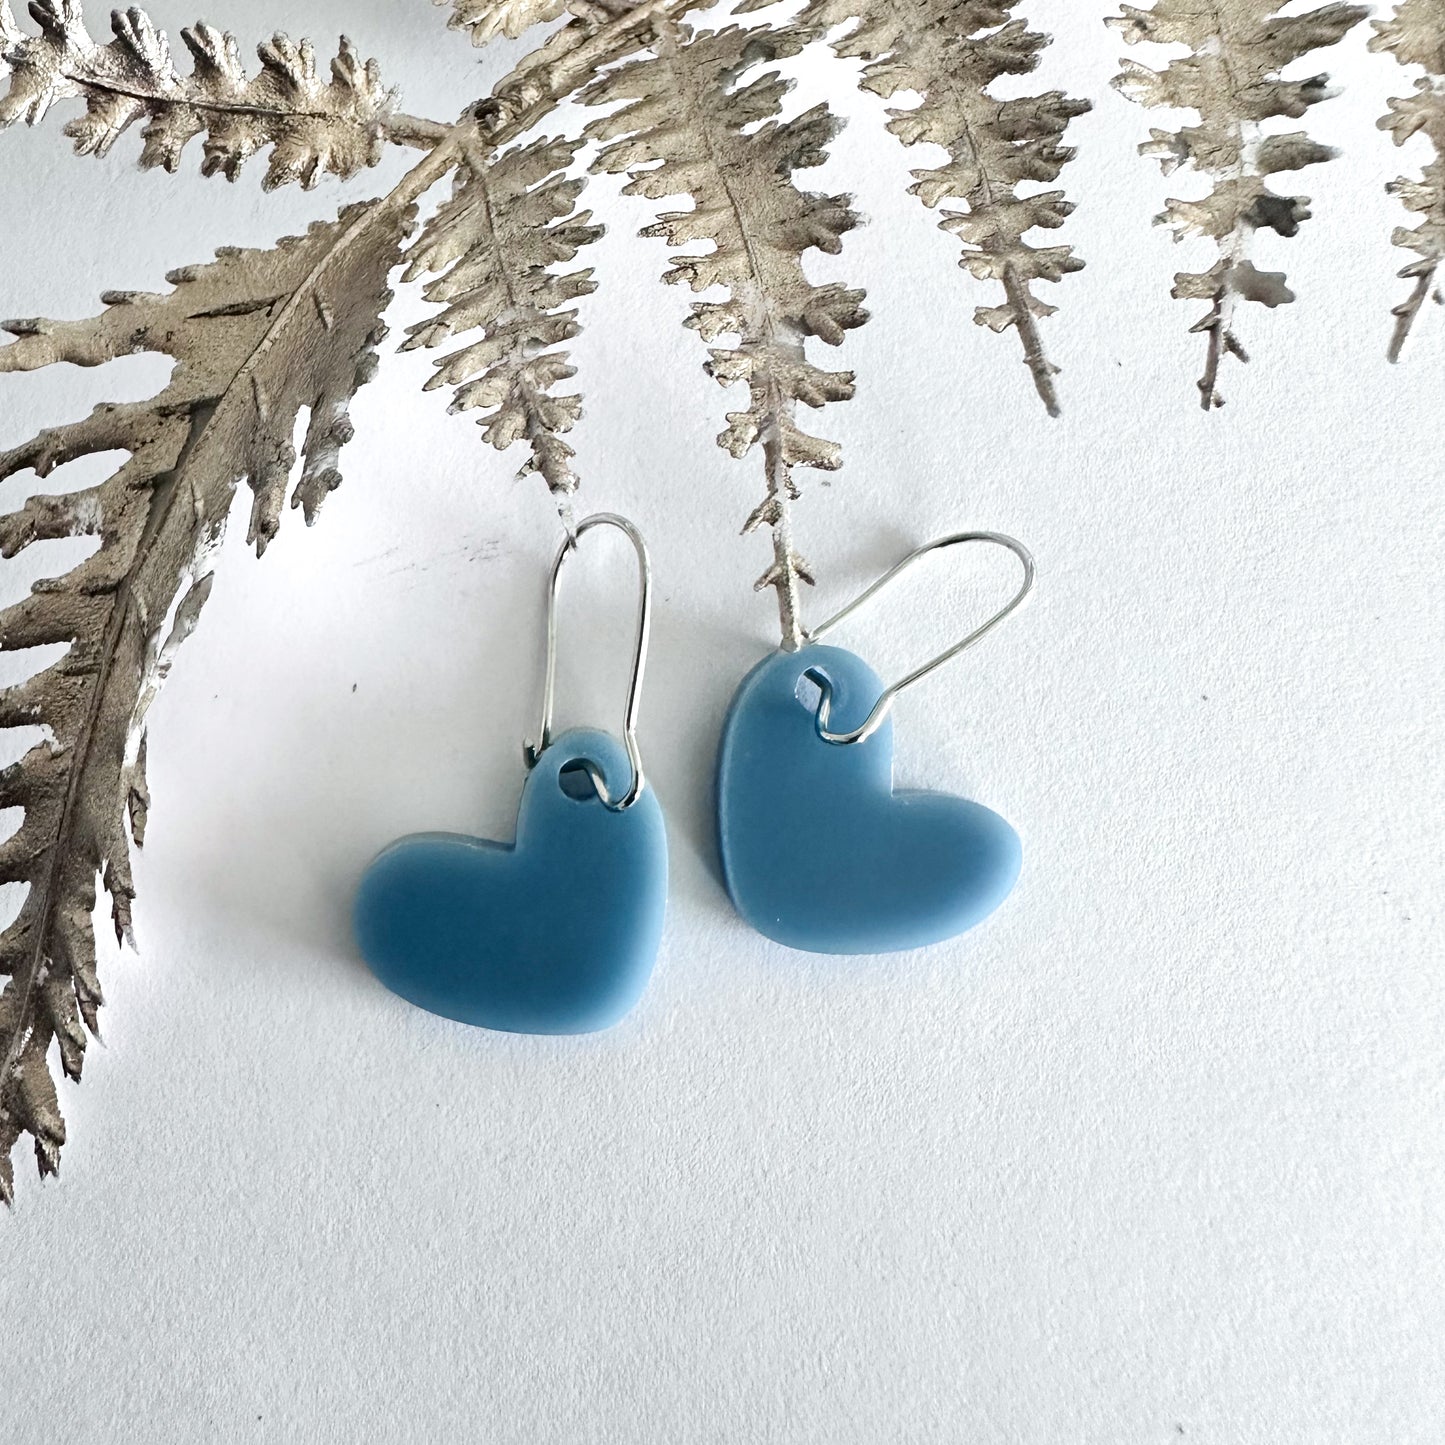 Hanging heart earrings